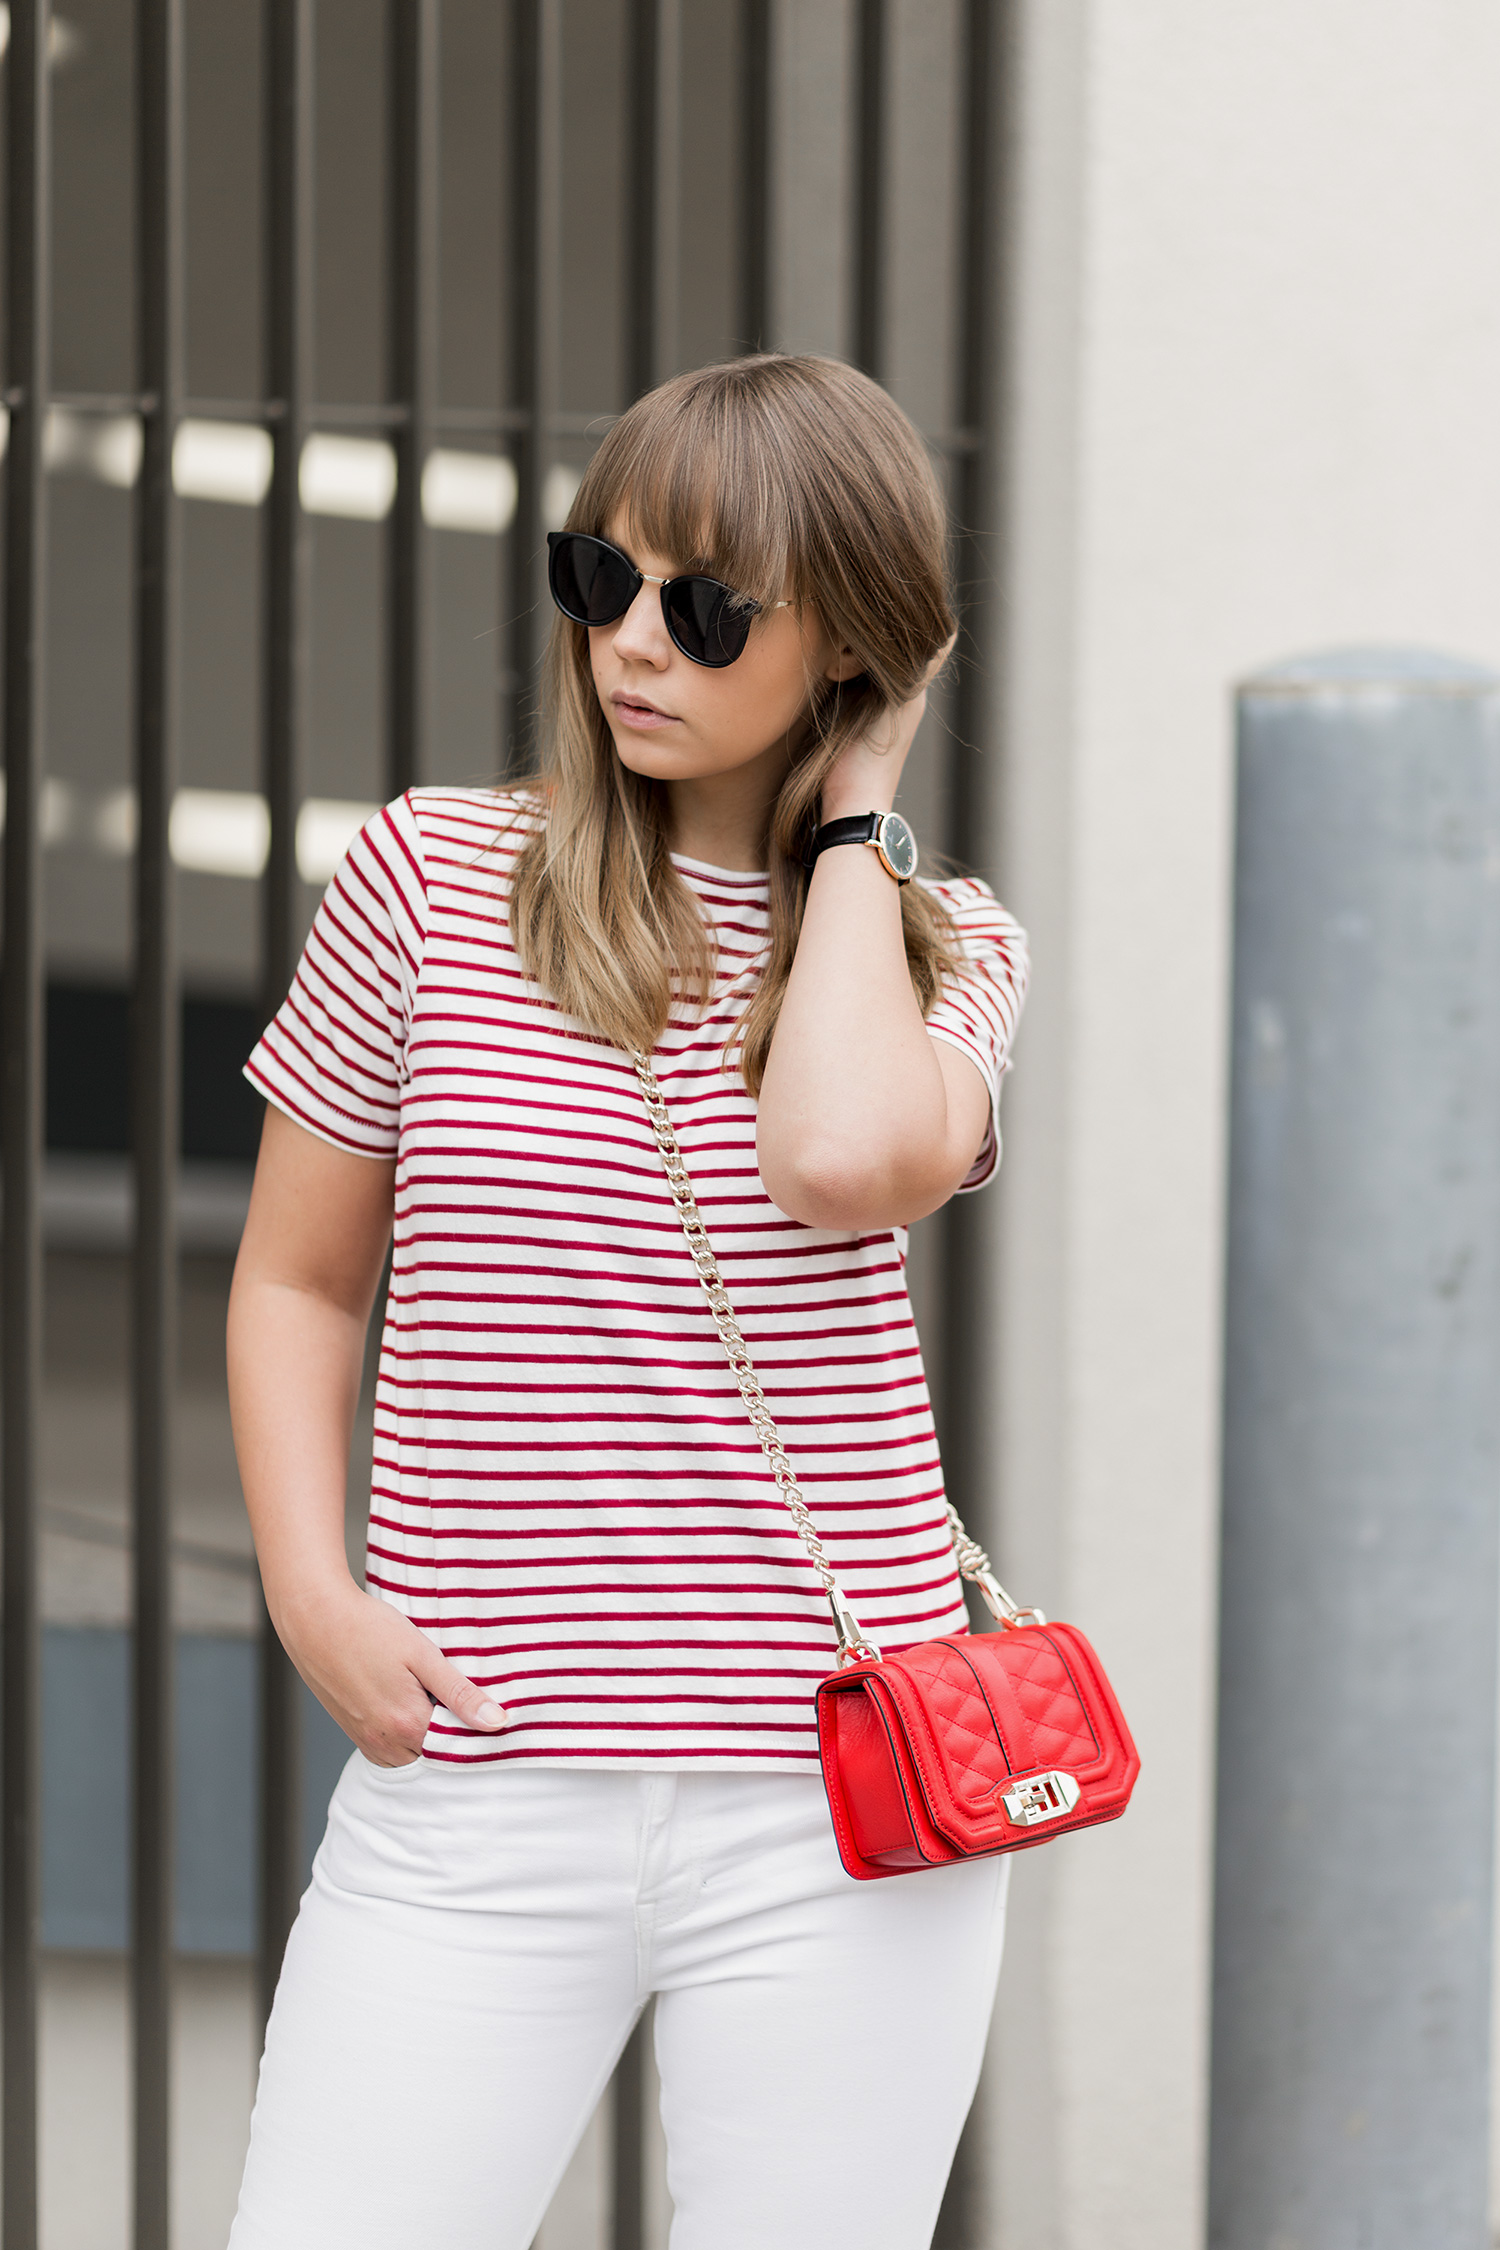 sommerliches Outfit in Rot und Weiß, rot-weiß gestreiftes T-Shirt Zara, weiße Jeans, rote Rebecca Tinkoff Tasche, Streetstyle, Sommeroutfit, bezauberndenana.de